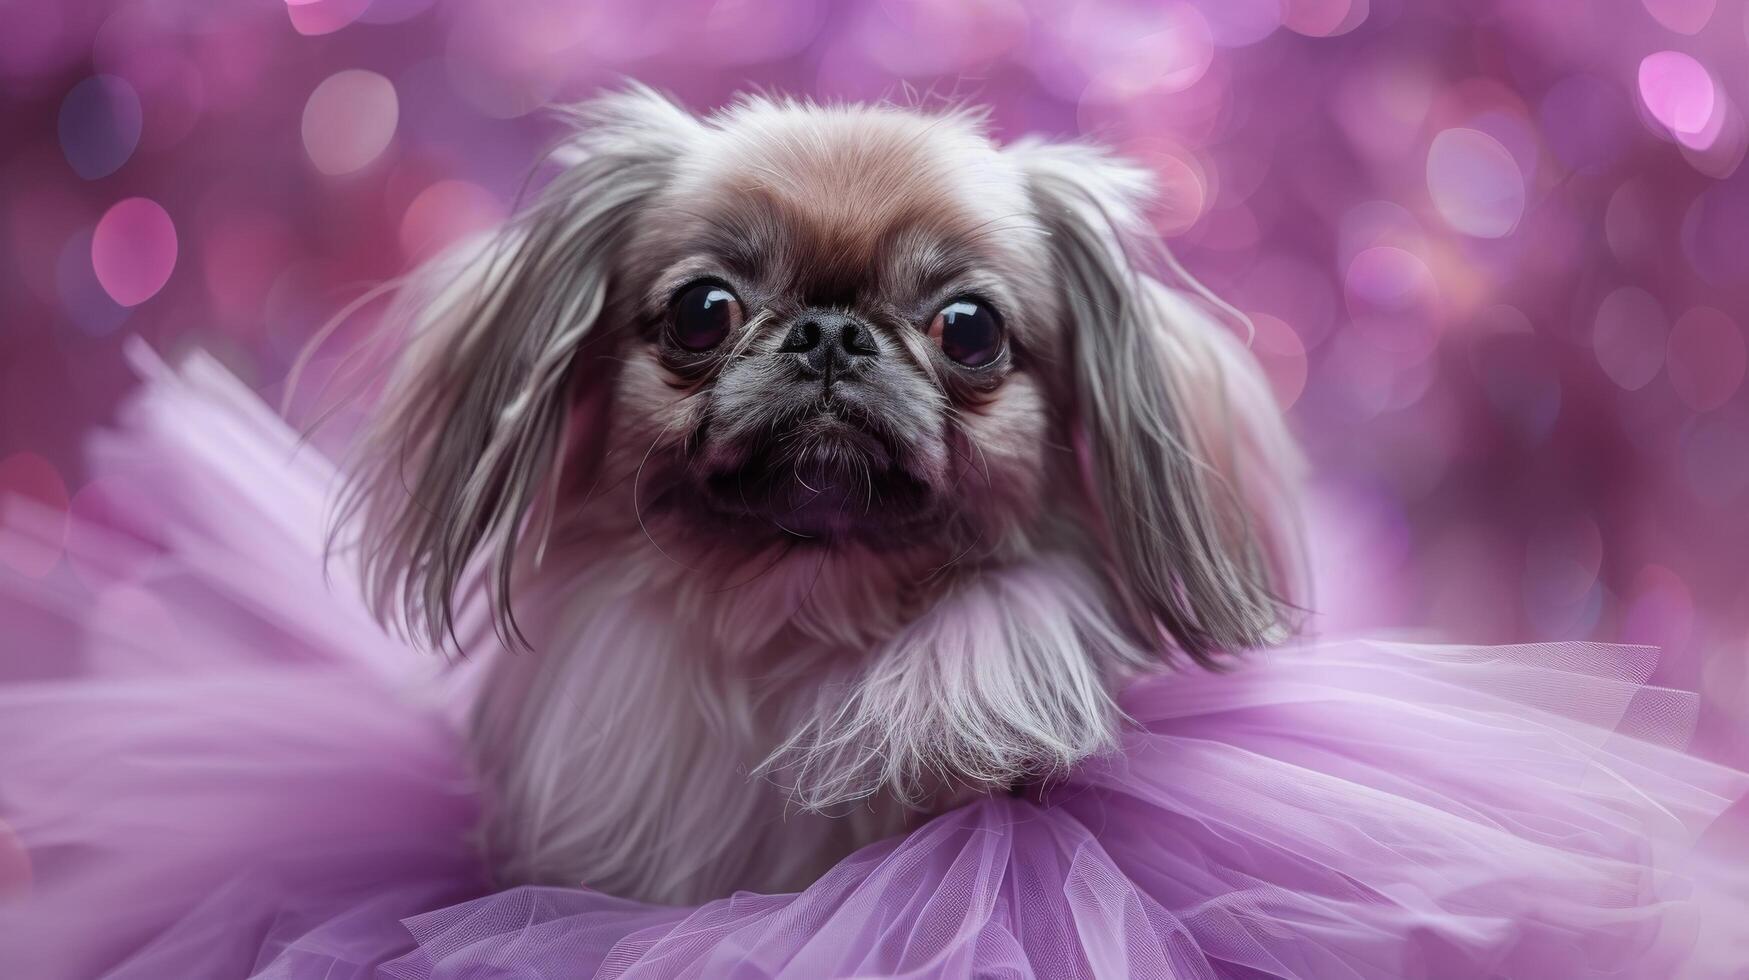 AI generated Small Dog Wearing Pink Dress photo